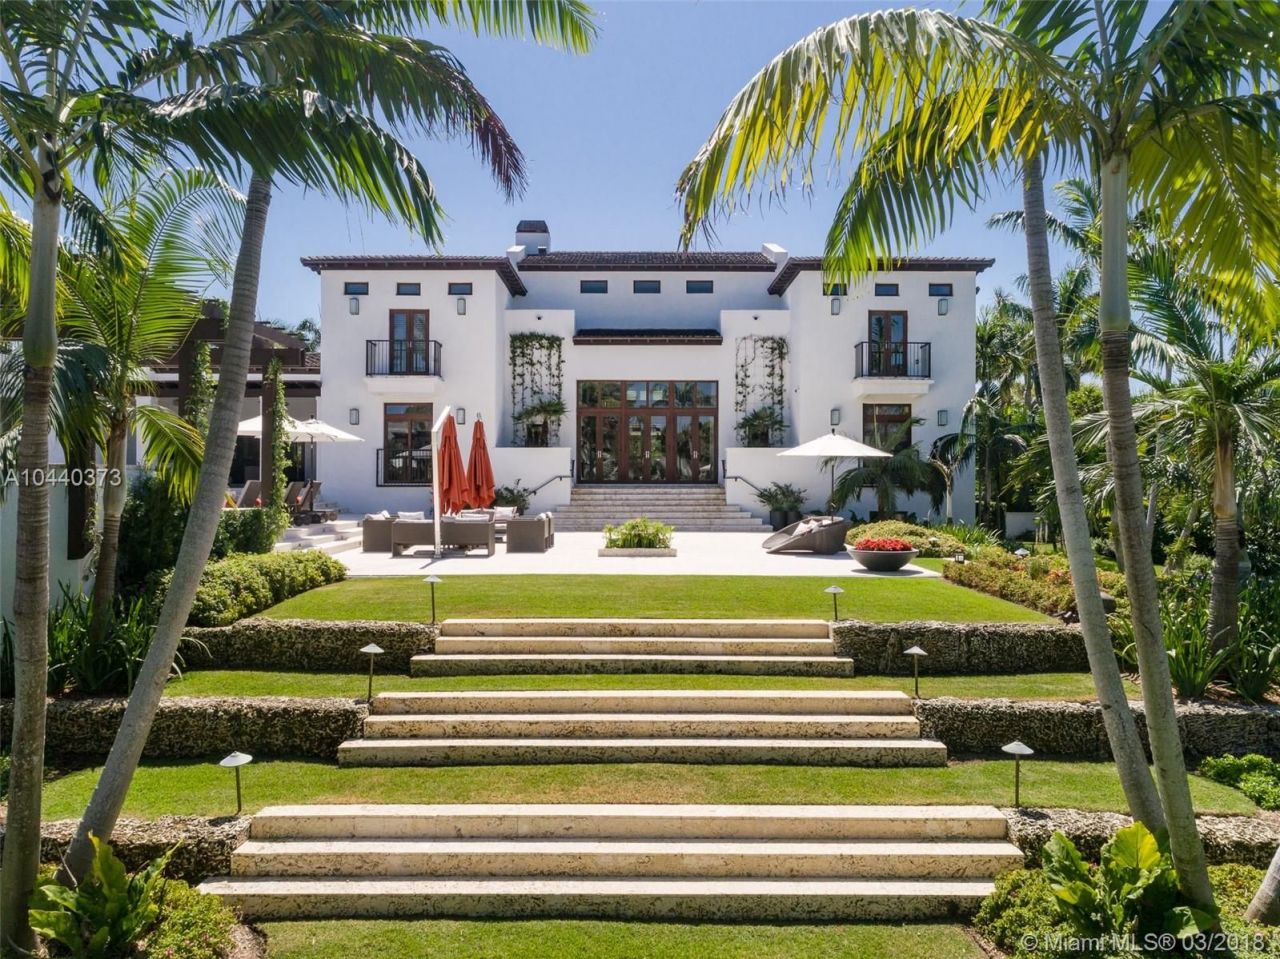 Villa in Miami, USA, 1 400 sq.m - picture 1